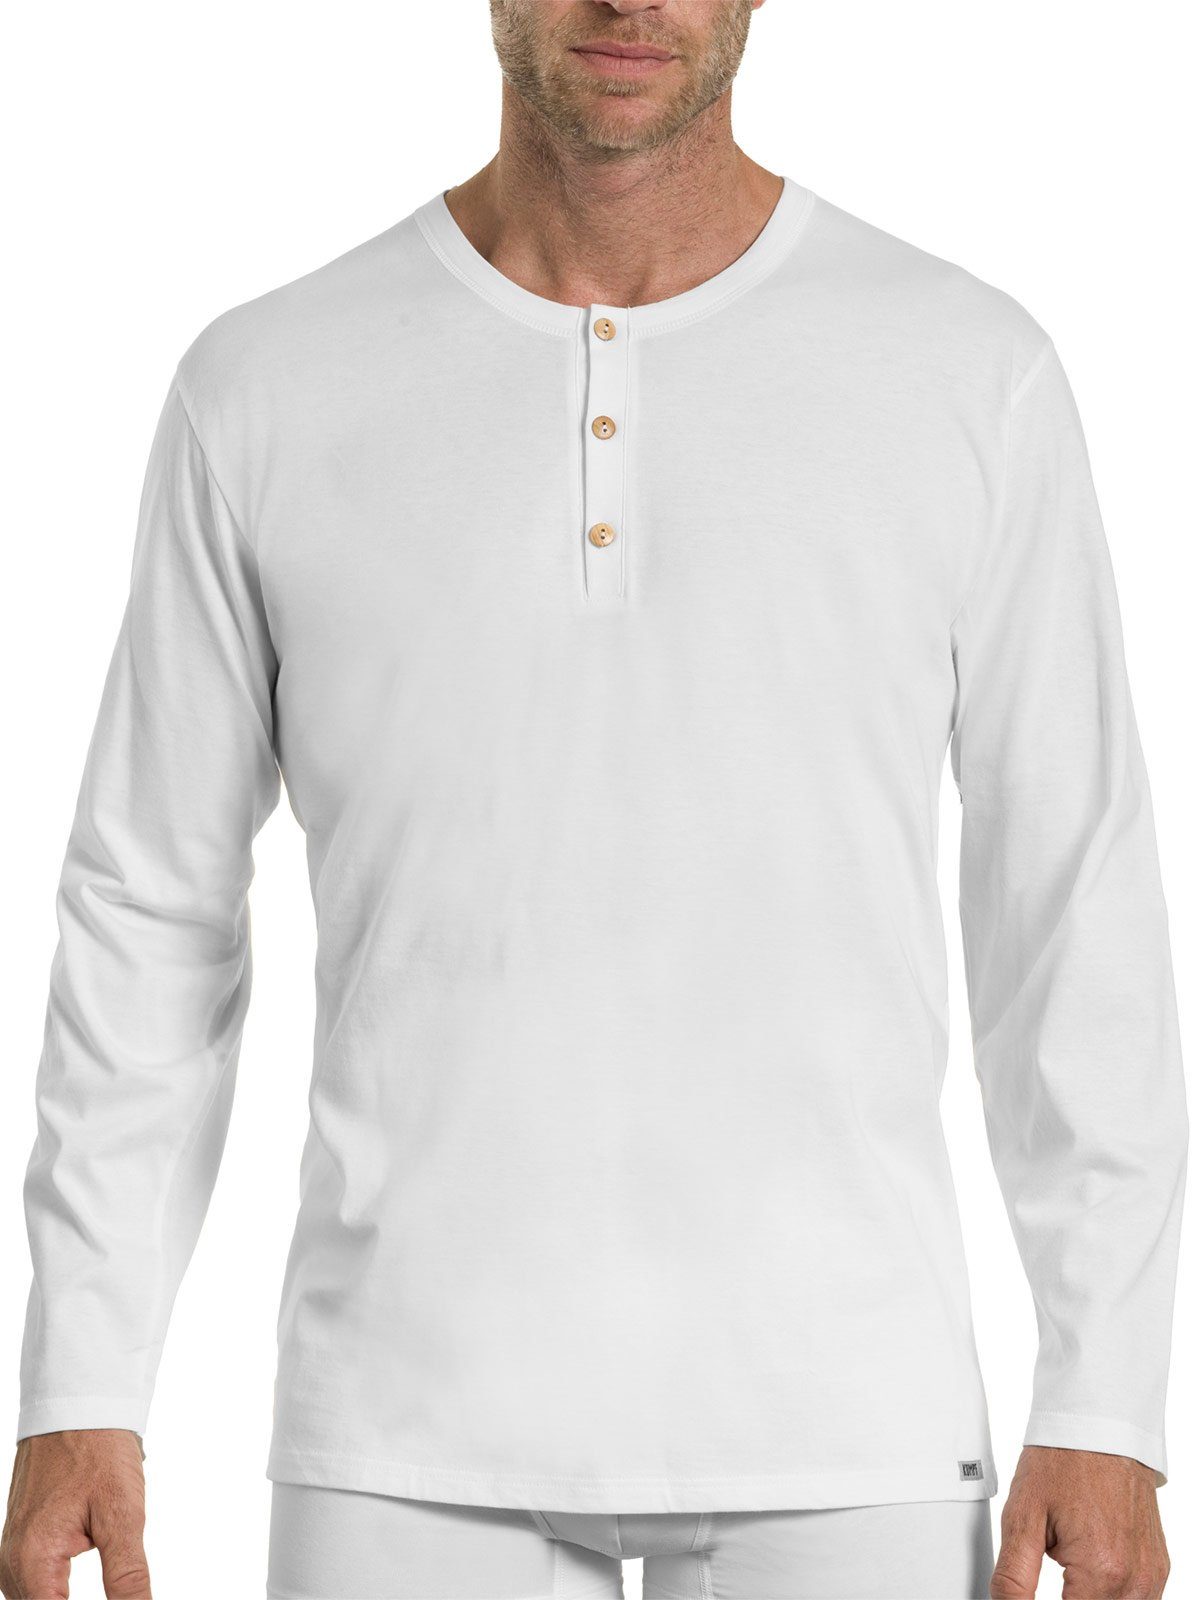 KUMPF Unterhemd Herren langarm 1-St) weiss Shirt (Stück, Cotton Markenqualität Bio hohe